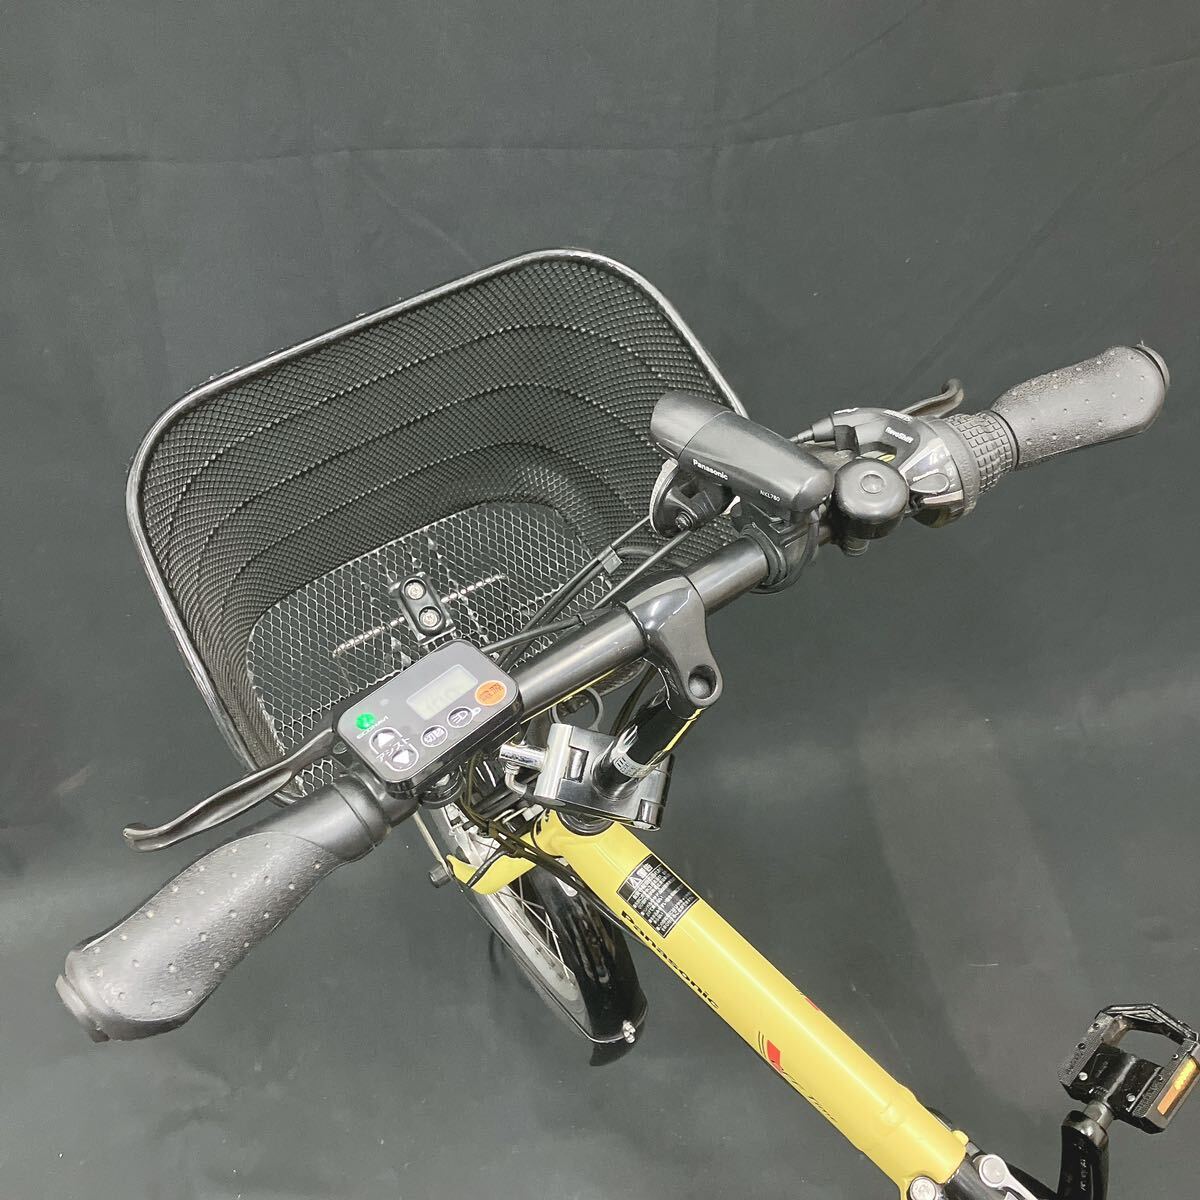  рабочий товар Panasonic Panasonic складной велосипед с электроприводом off время BE-ELW07Y желтый принадлежности имеется стоимость доставки супер-скидка R.0422